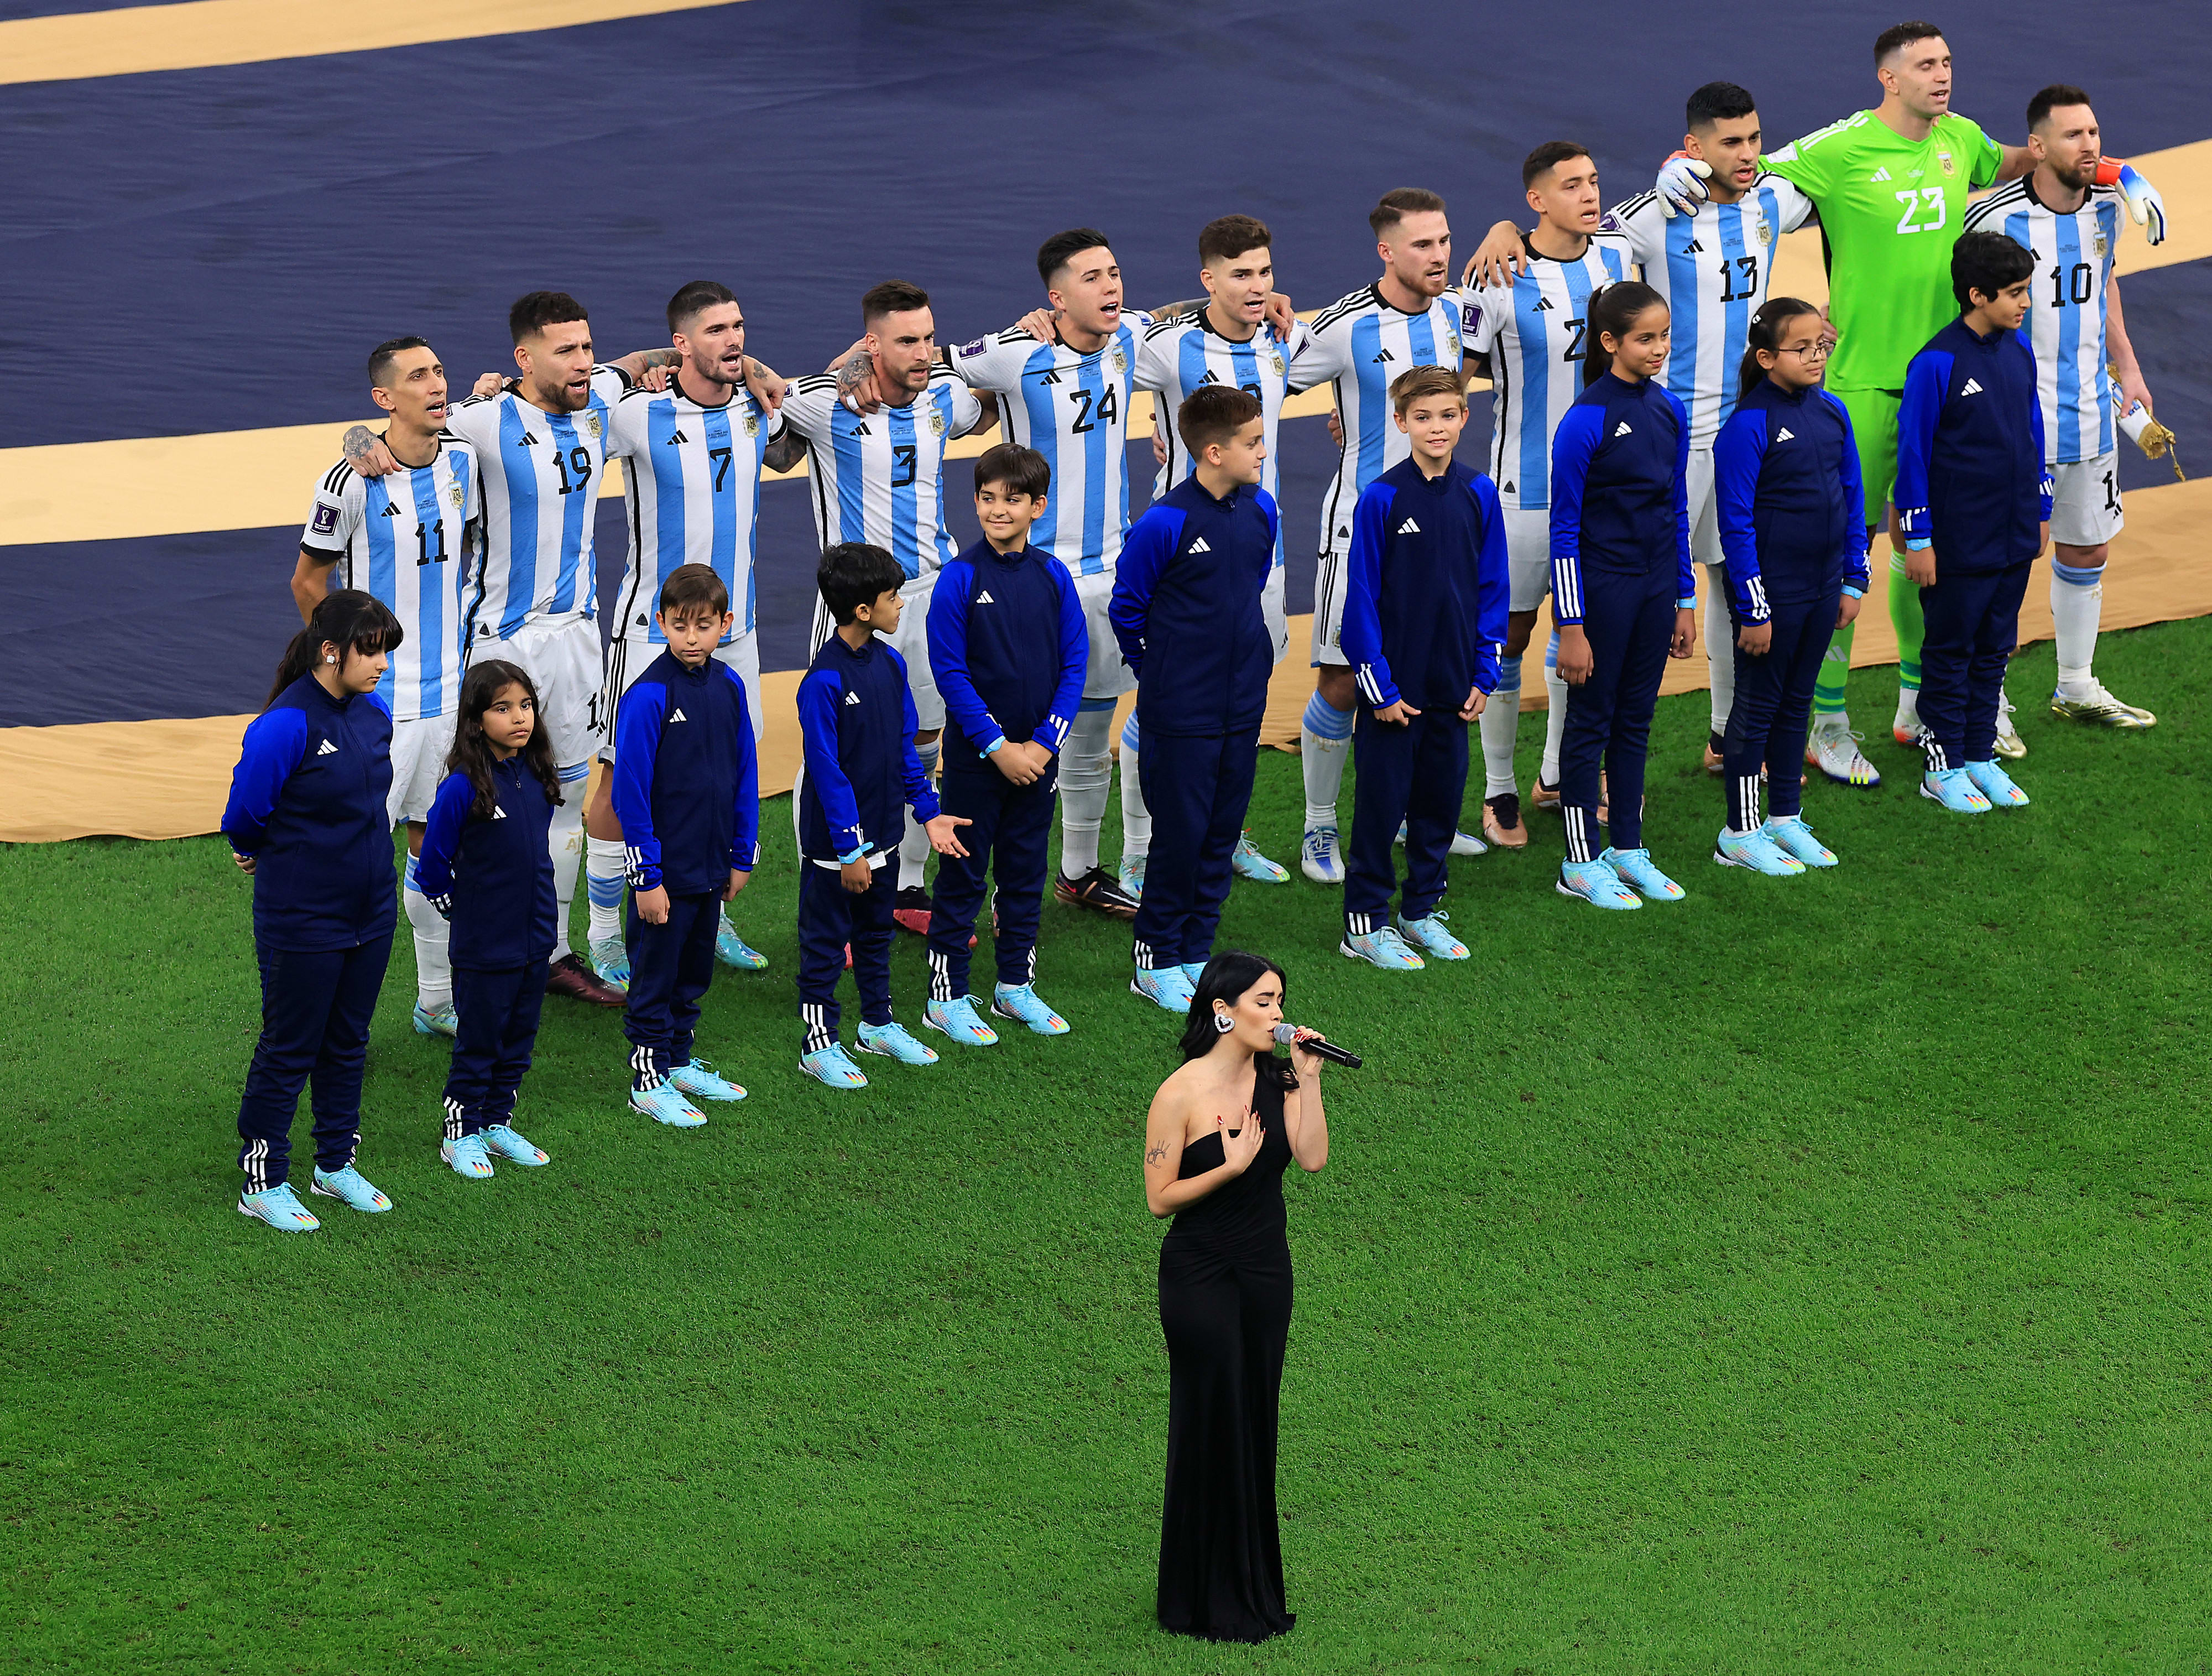 הזמרת לאלי שרה את המנון ארגנטינה לפני גמר המונדיאל בקטאר